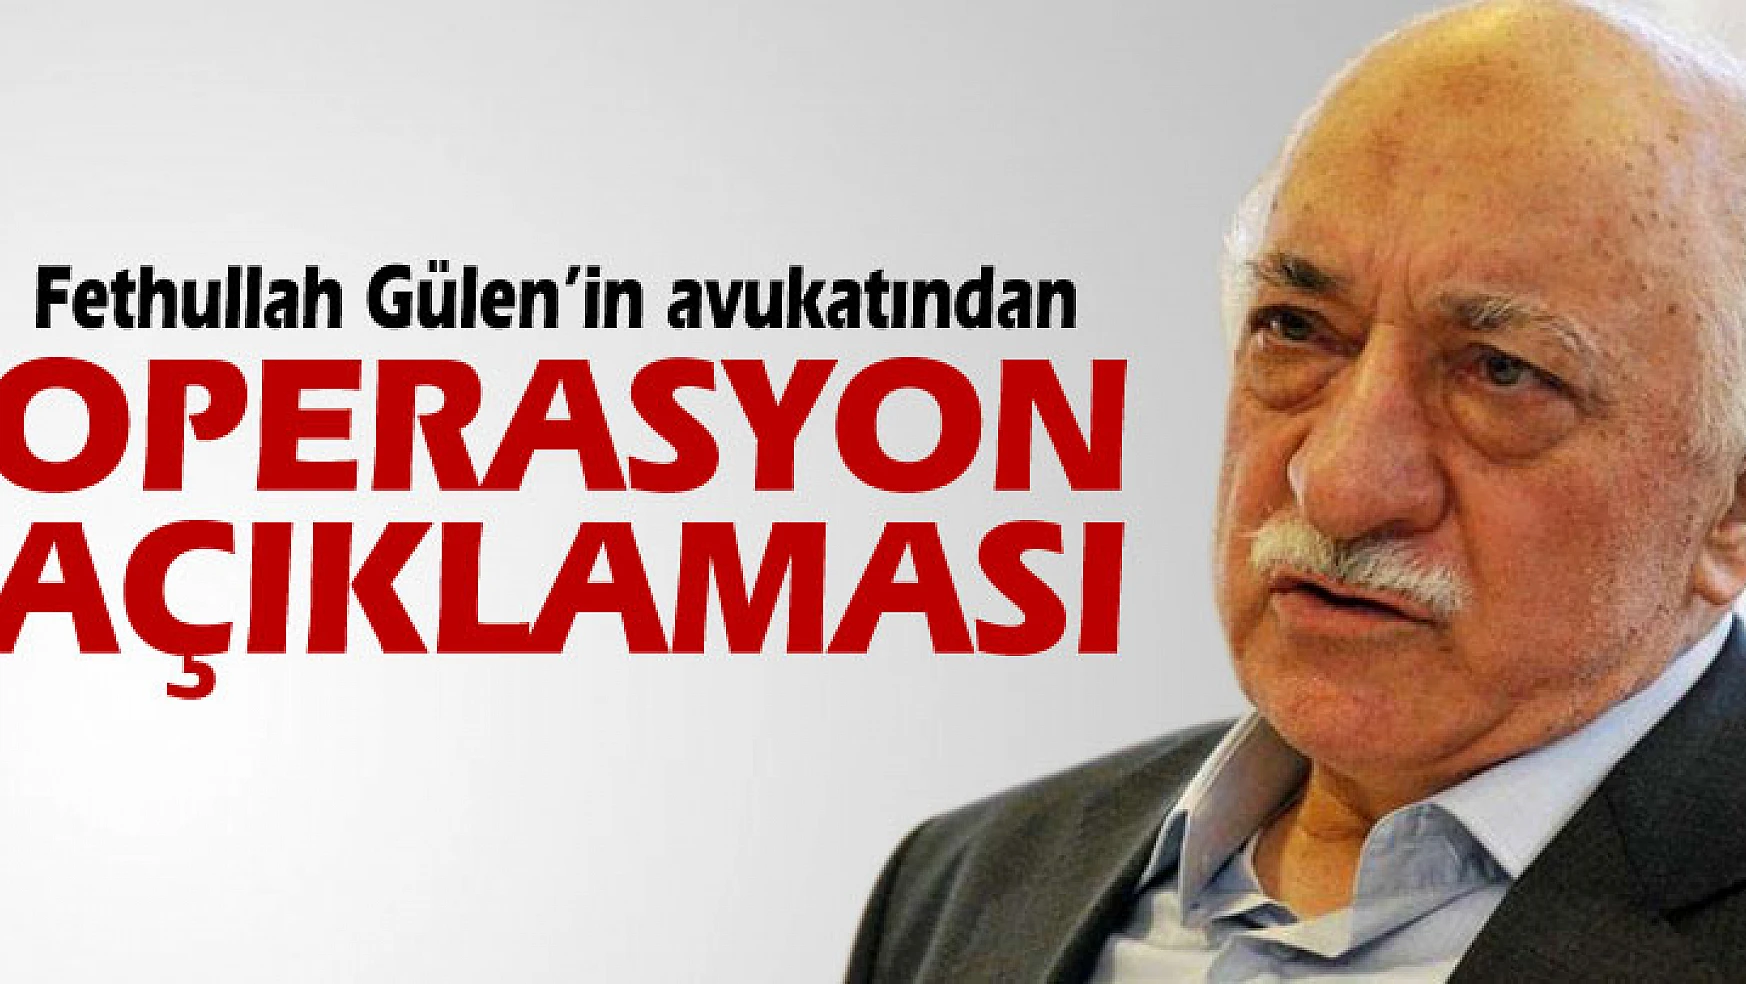 Fethullah Gülenin avukatından operasyon açıklaması